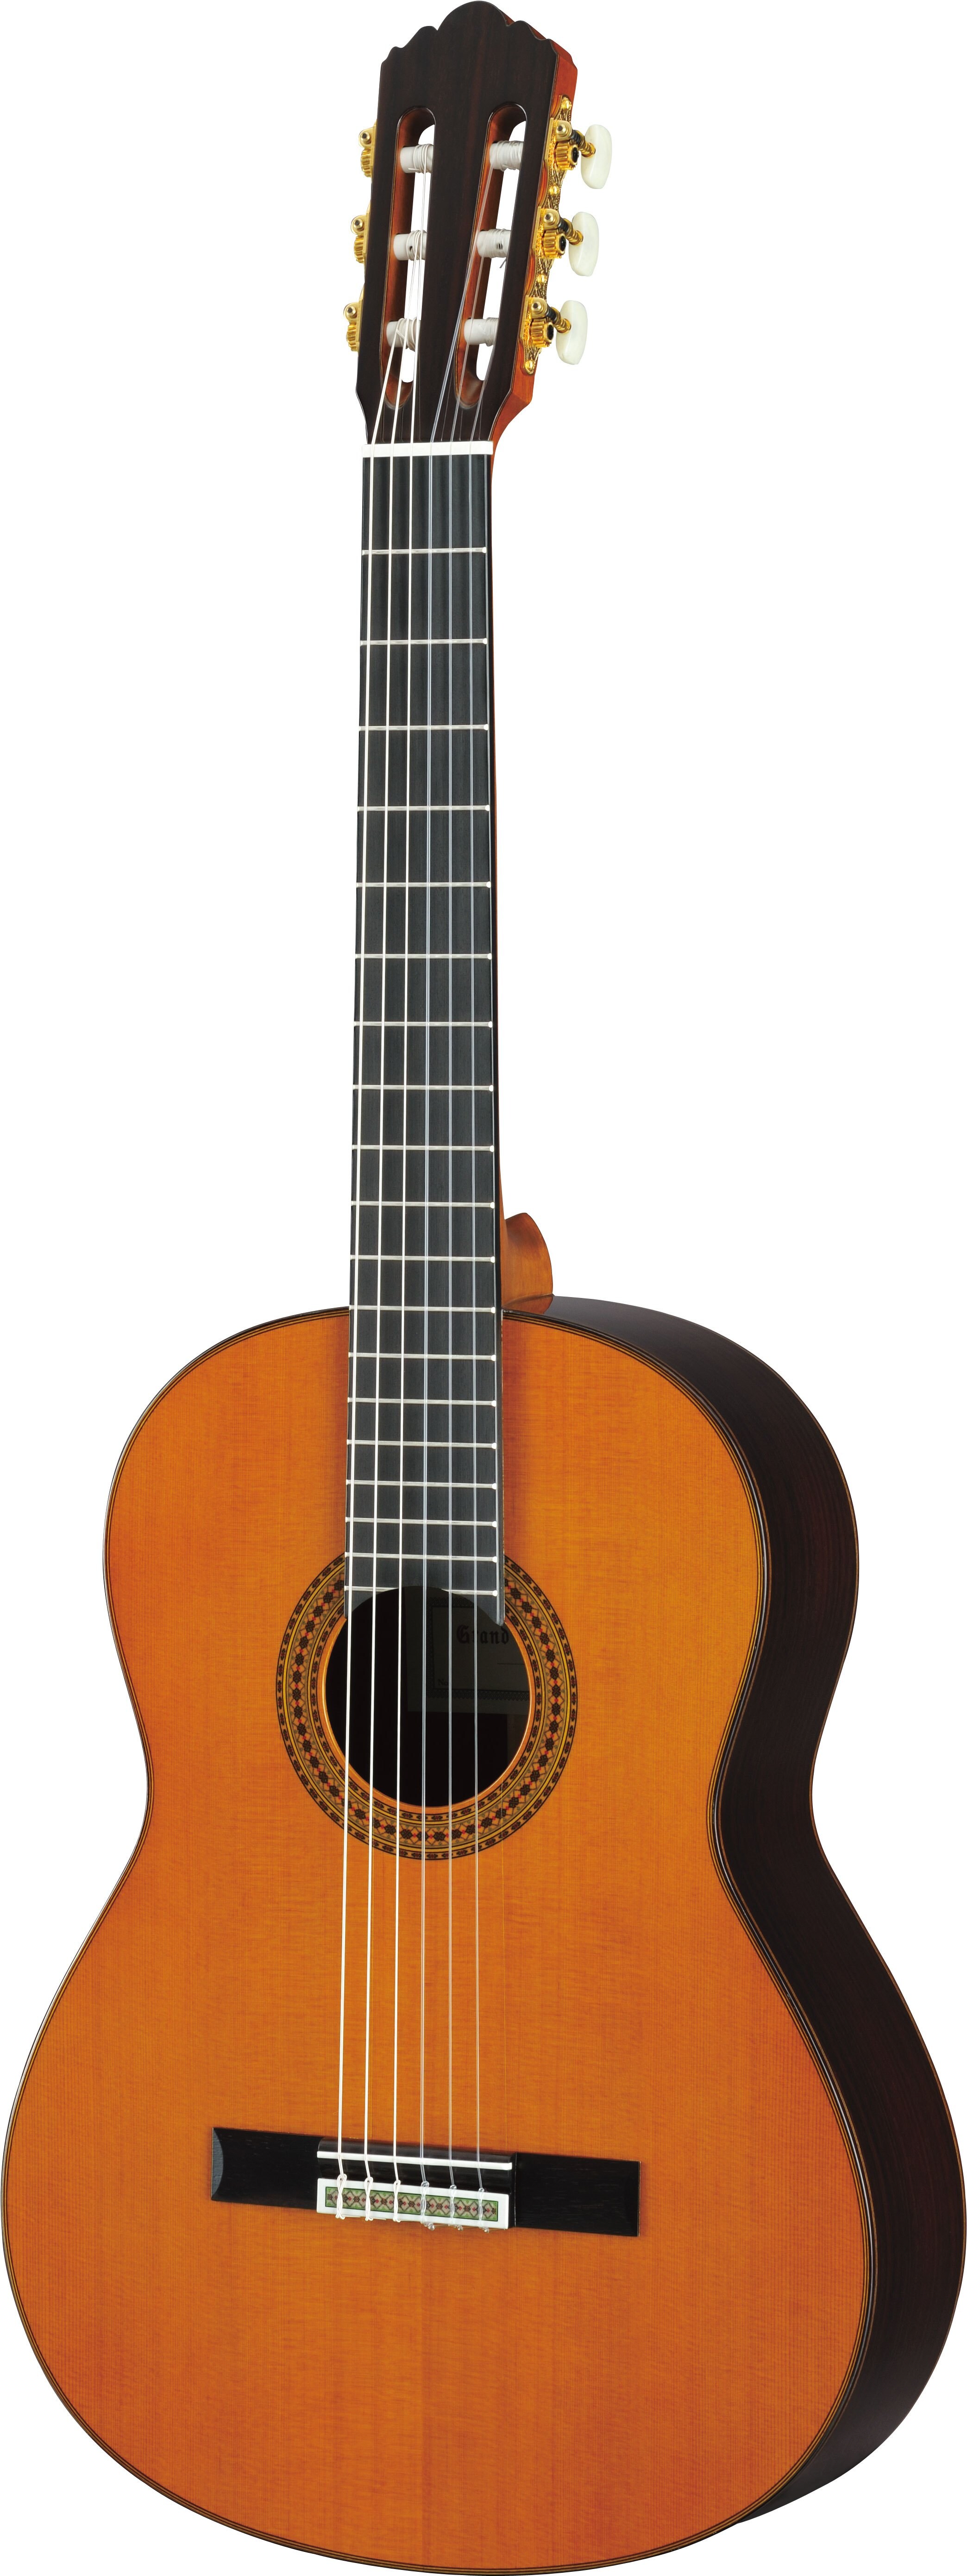 Yamaha GC22C - классическая гитара.  Верхняя дека и обечайки выполнены из массива дерева